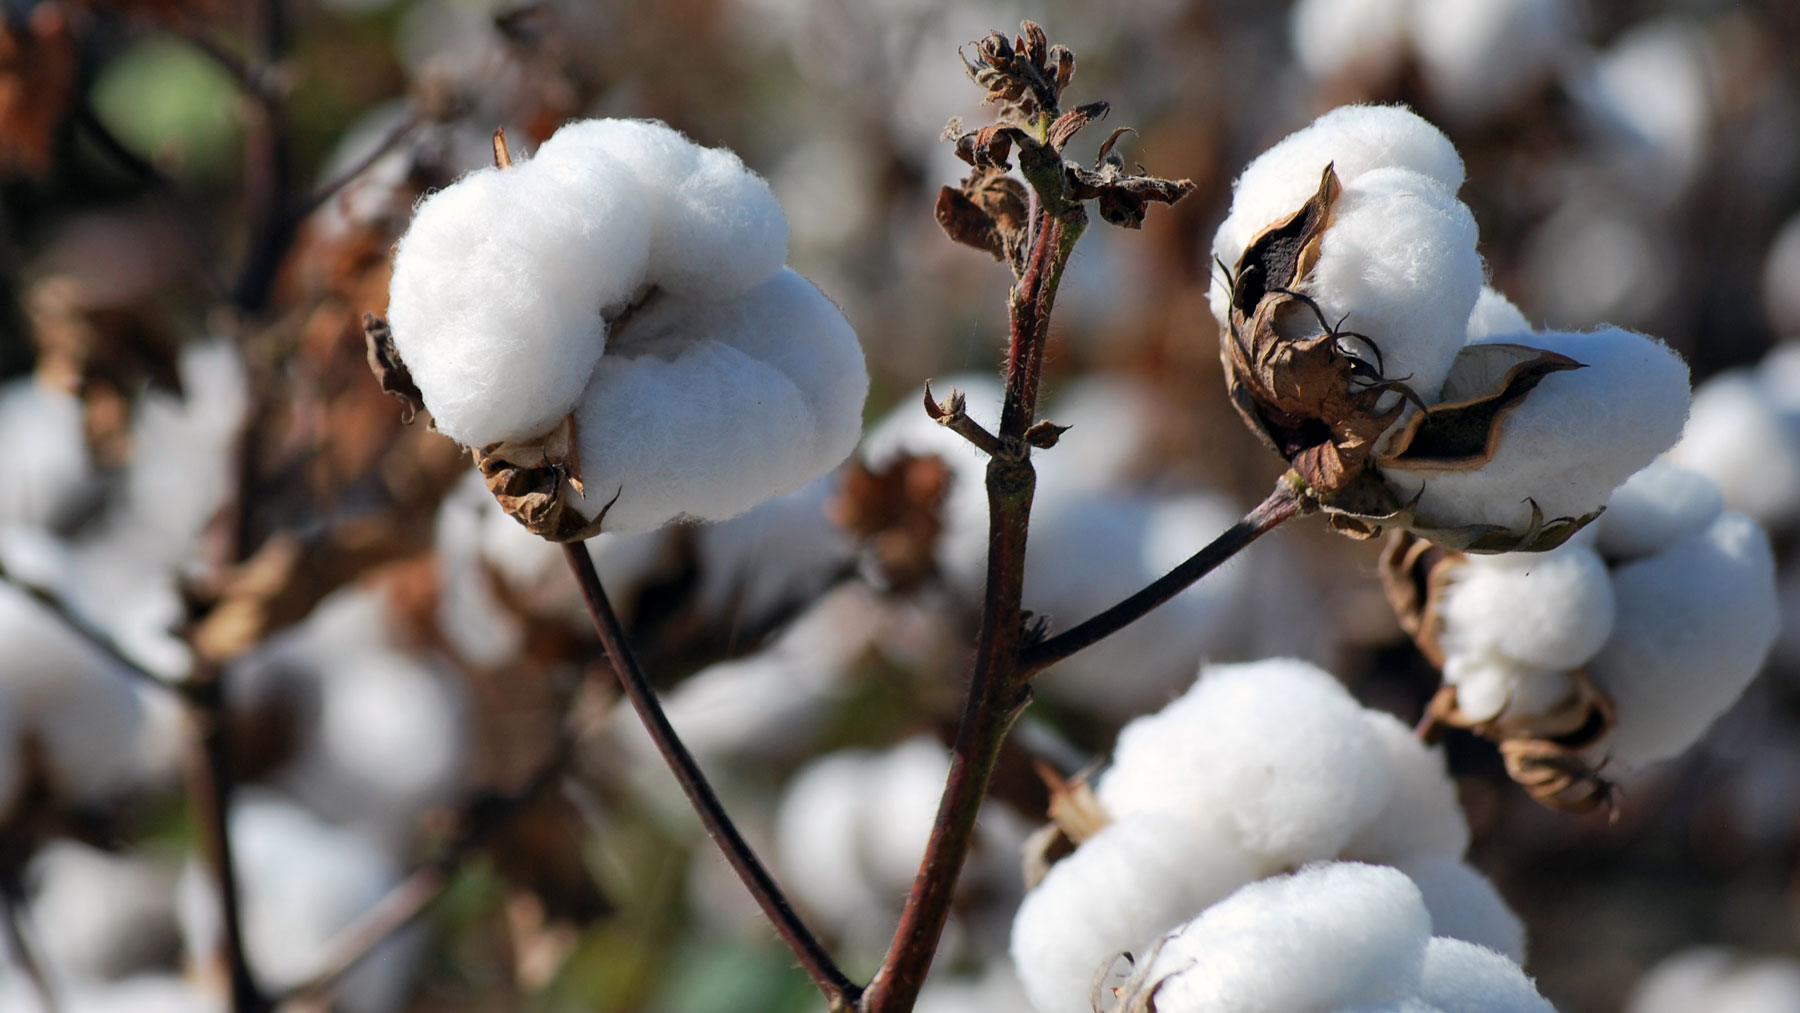 Clemson and Australia join to combat Fusarium wilt in cotton